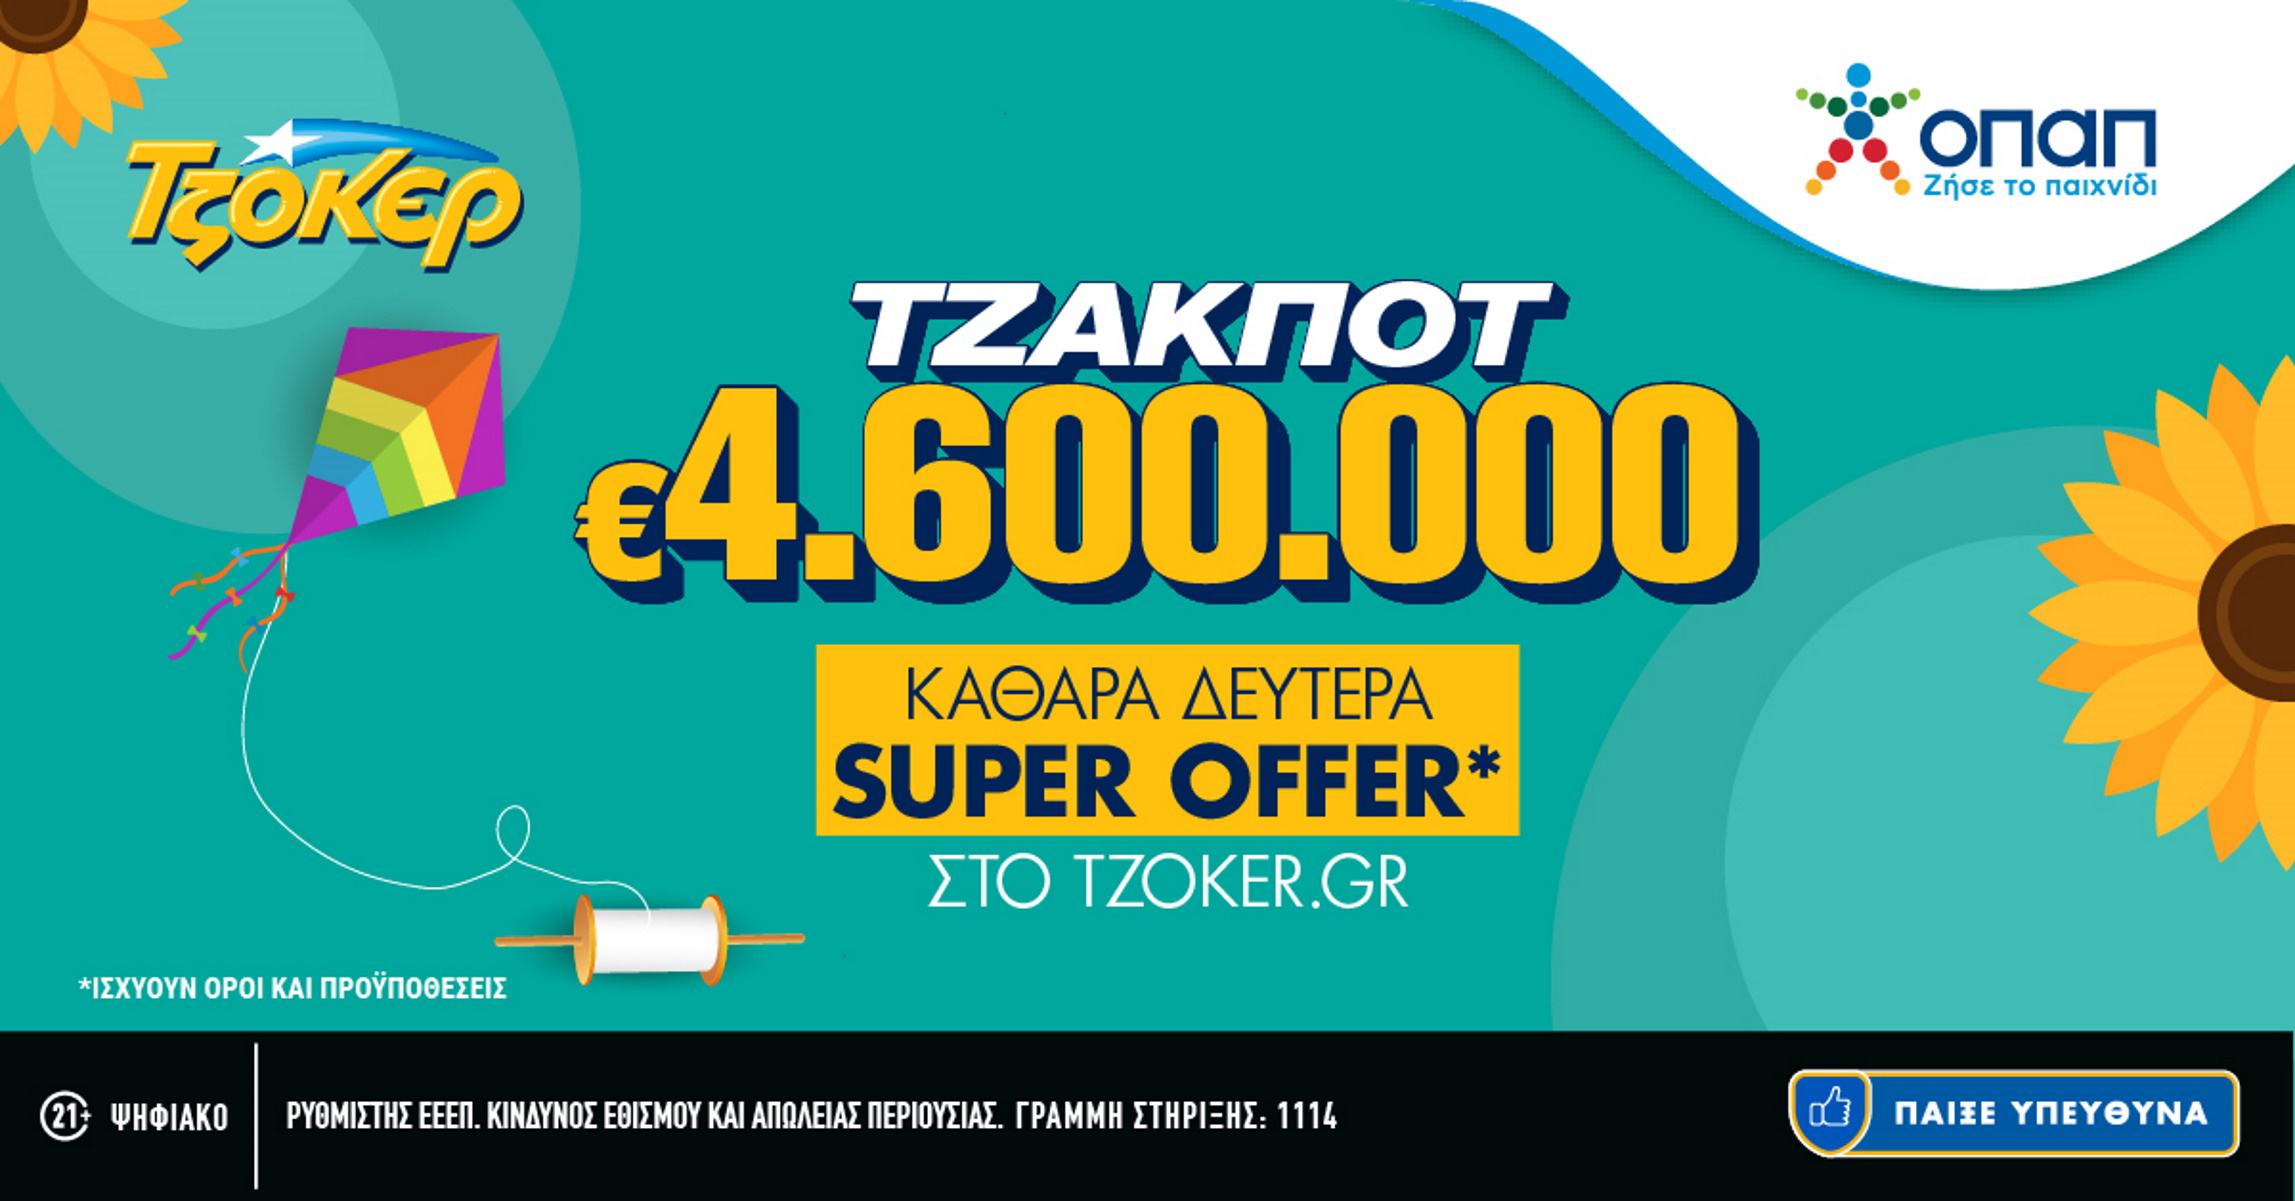 Καθαρά Δευτέρα με «Super Offer» στο tzoker.gr – Τουλάχιστον 4,6 εκατ. ευρώ στην κλήρωση της Κυριακής (26/02)